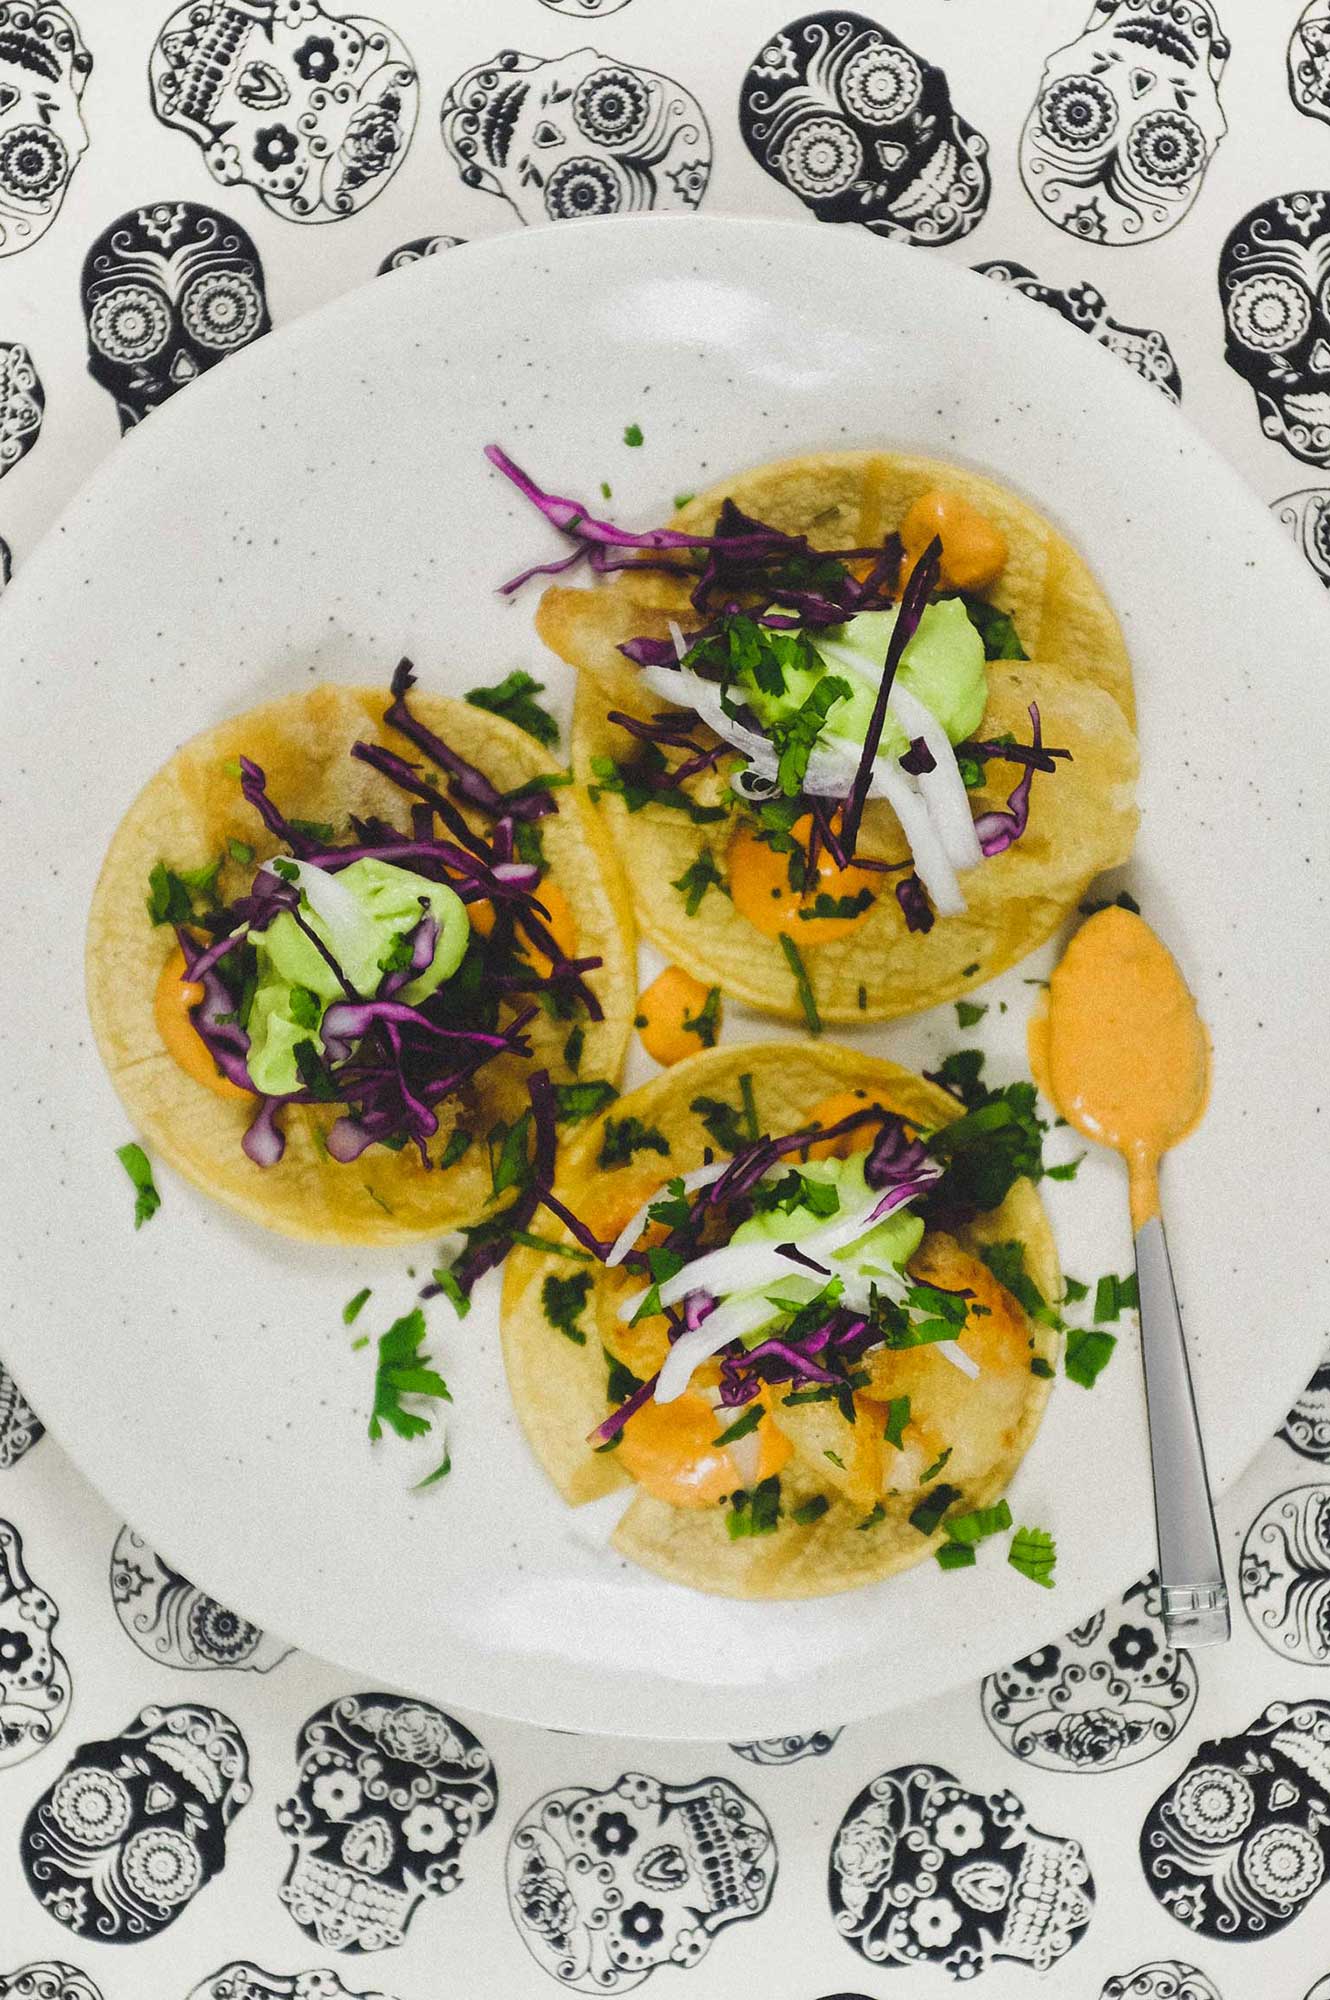 A platter of Baja Fish Tacos